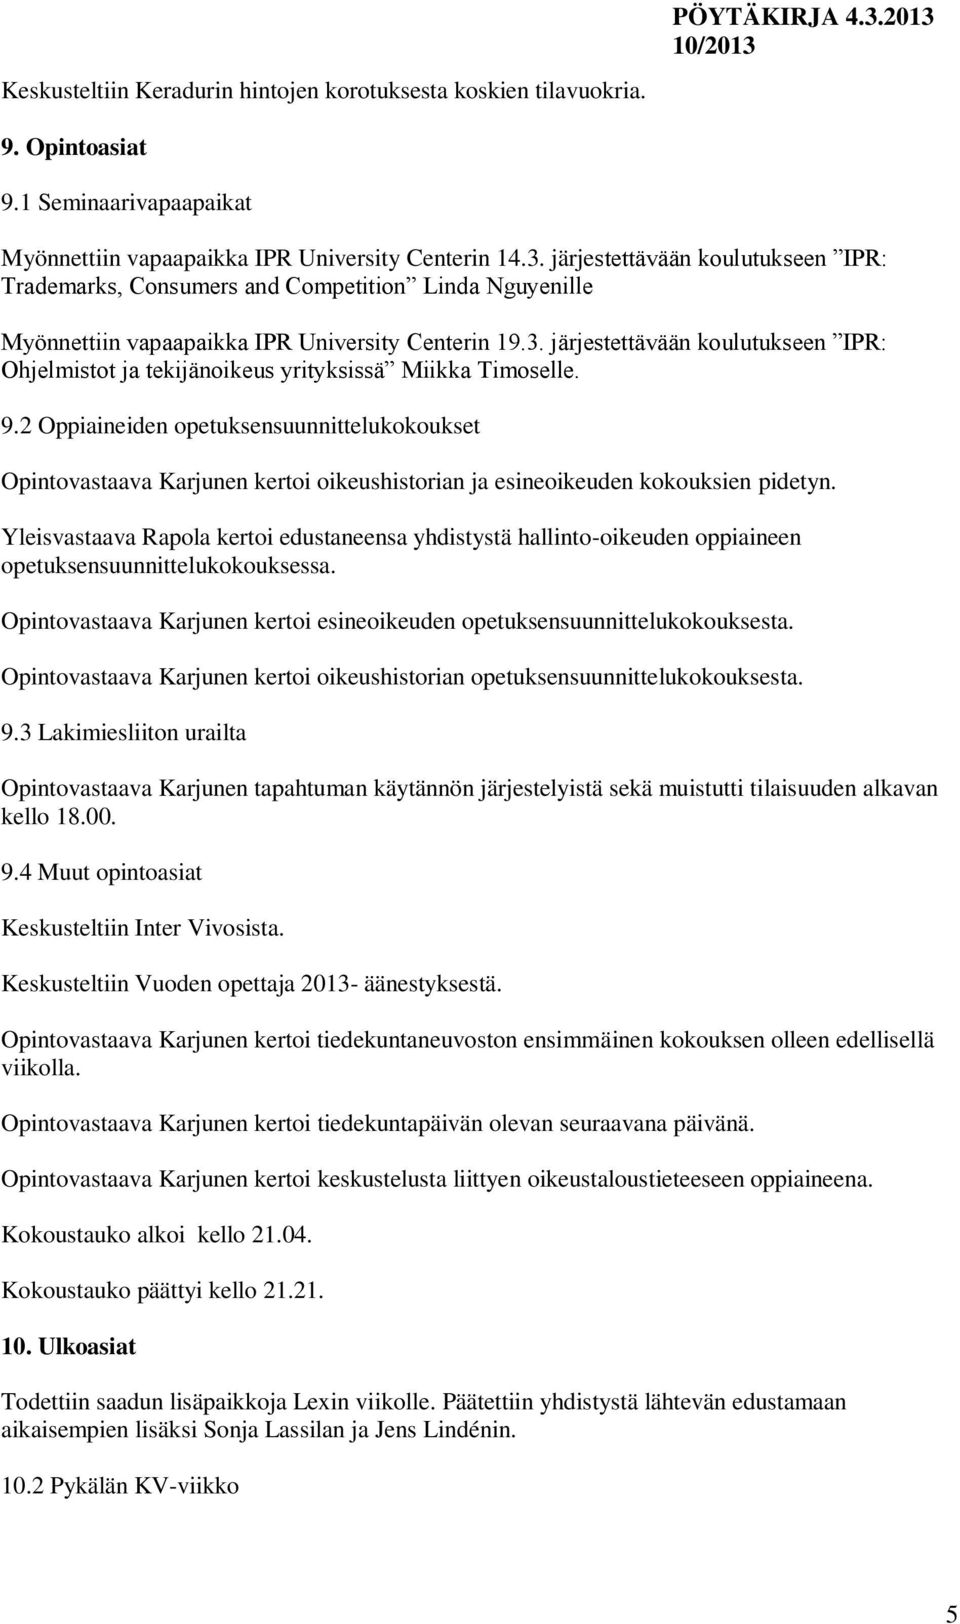 järjestettävään koulutukseen IPR: Ohjelmistot ja tekijänoikeus yrityksissä Miikka Timoselle. 9.